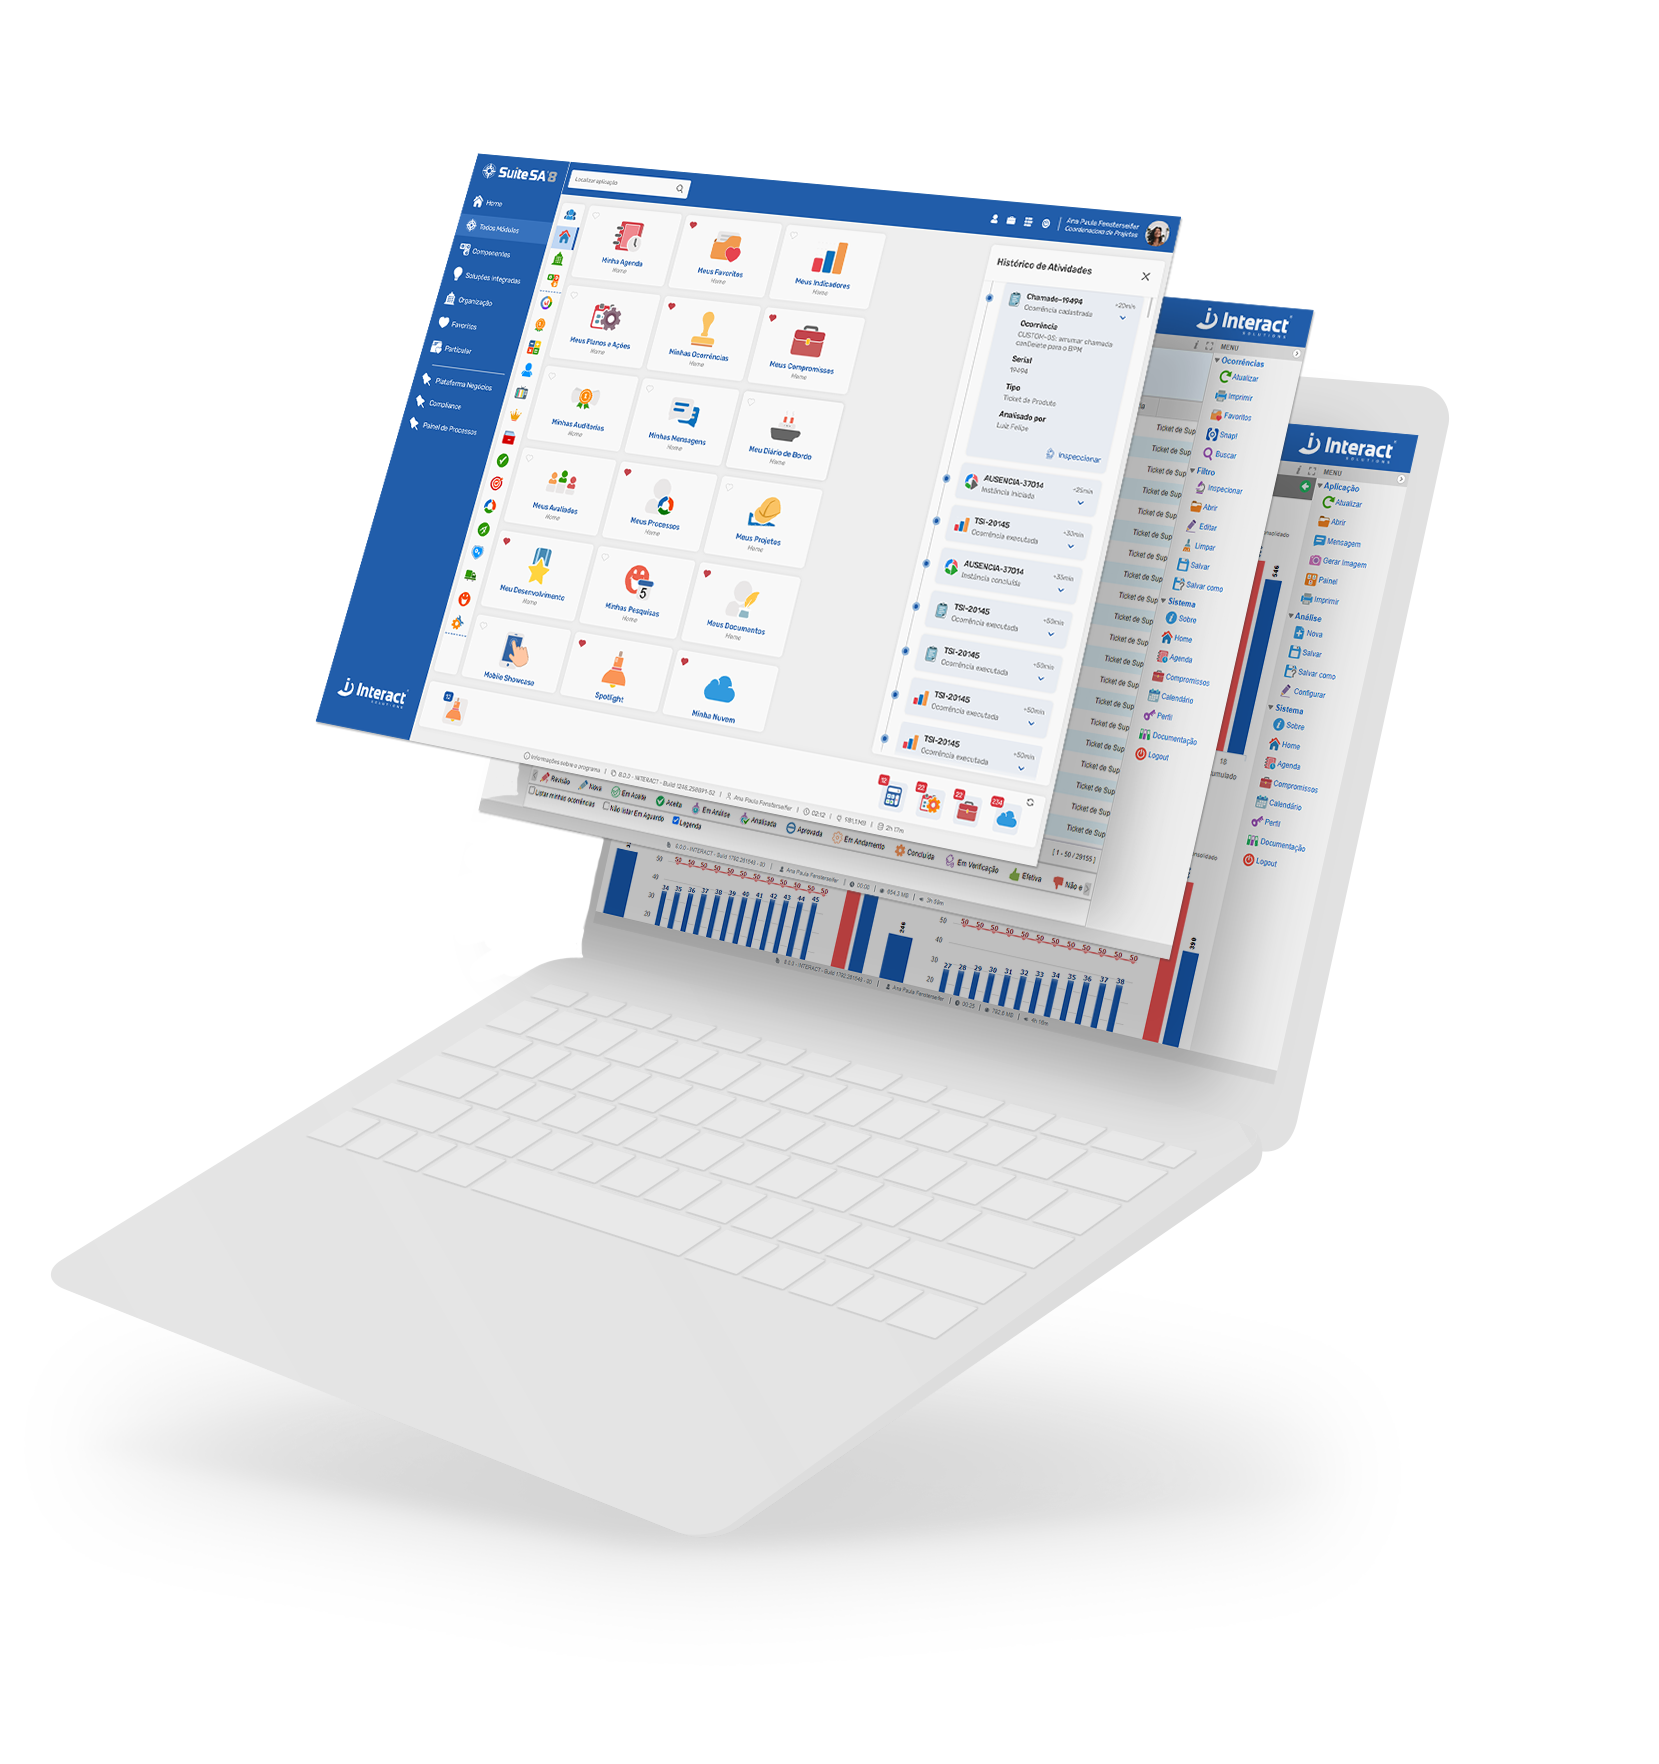 Suite SA 8: Interact lança oitava versão de seu software de governança corporativa